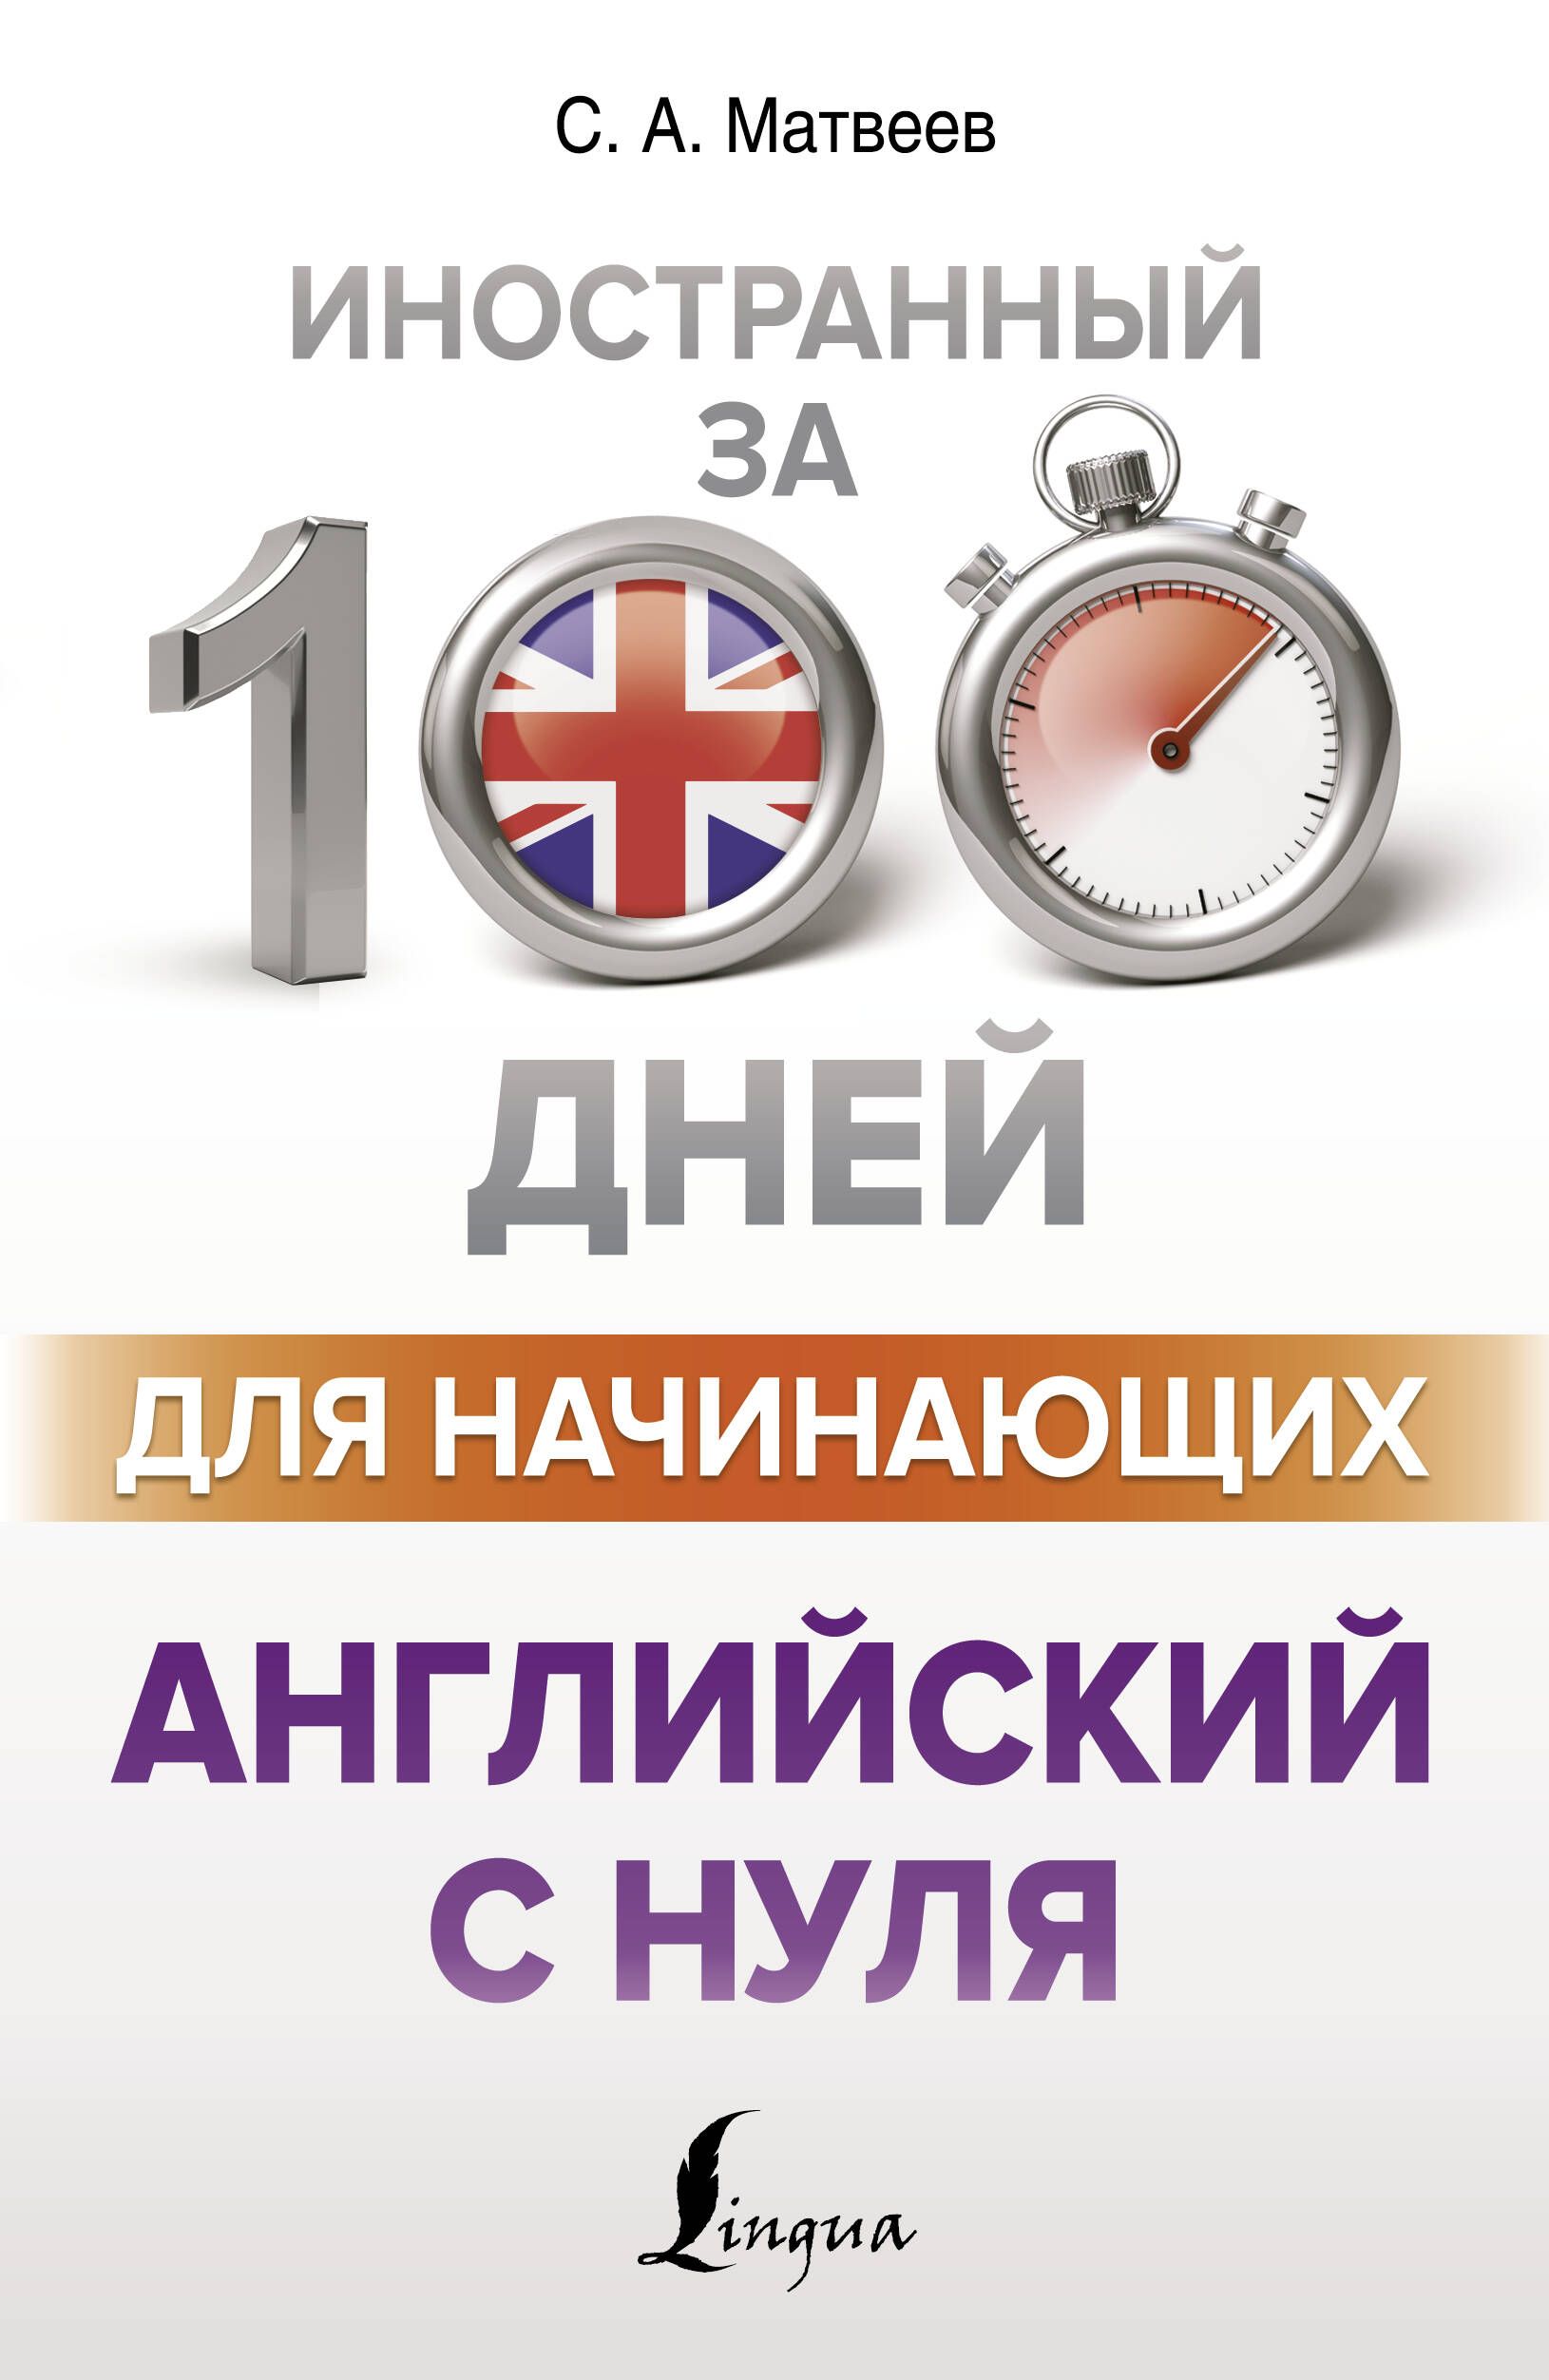 100 дней английского языка